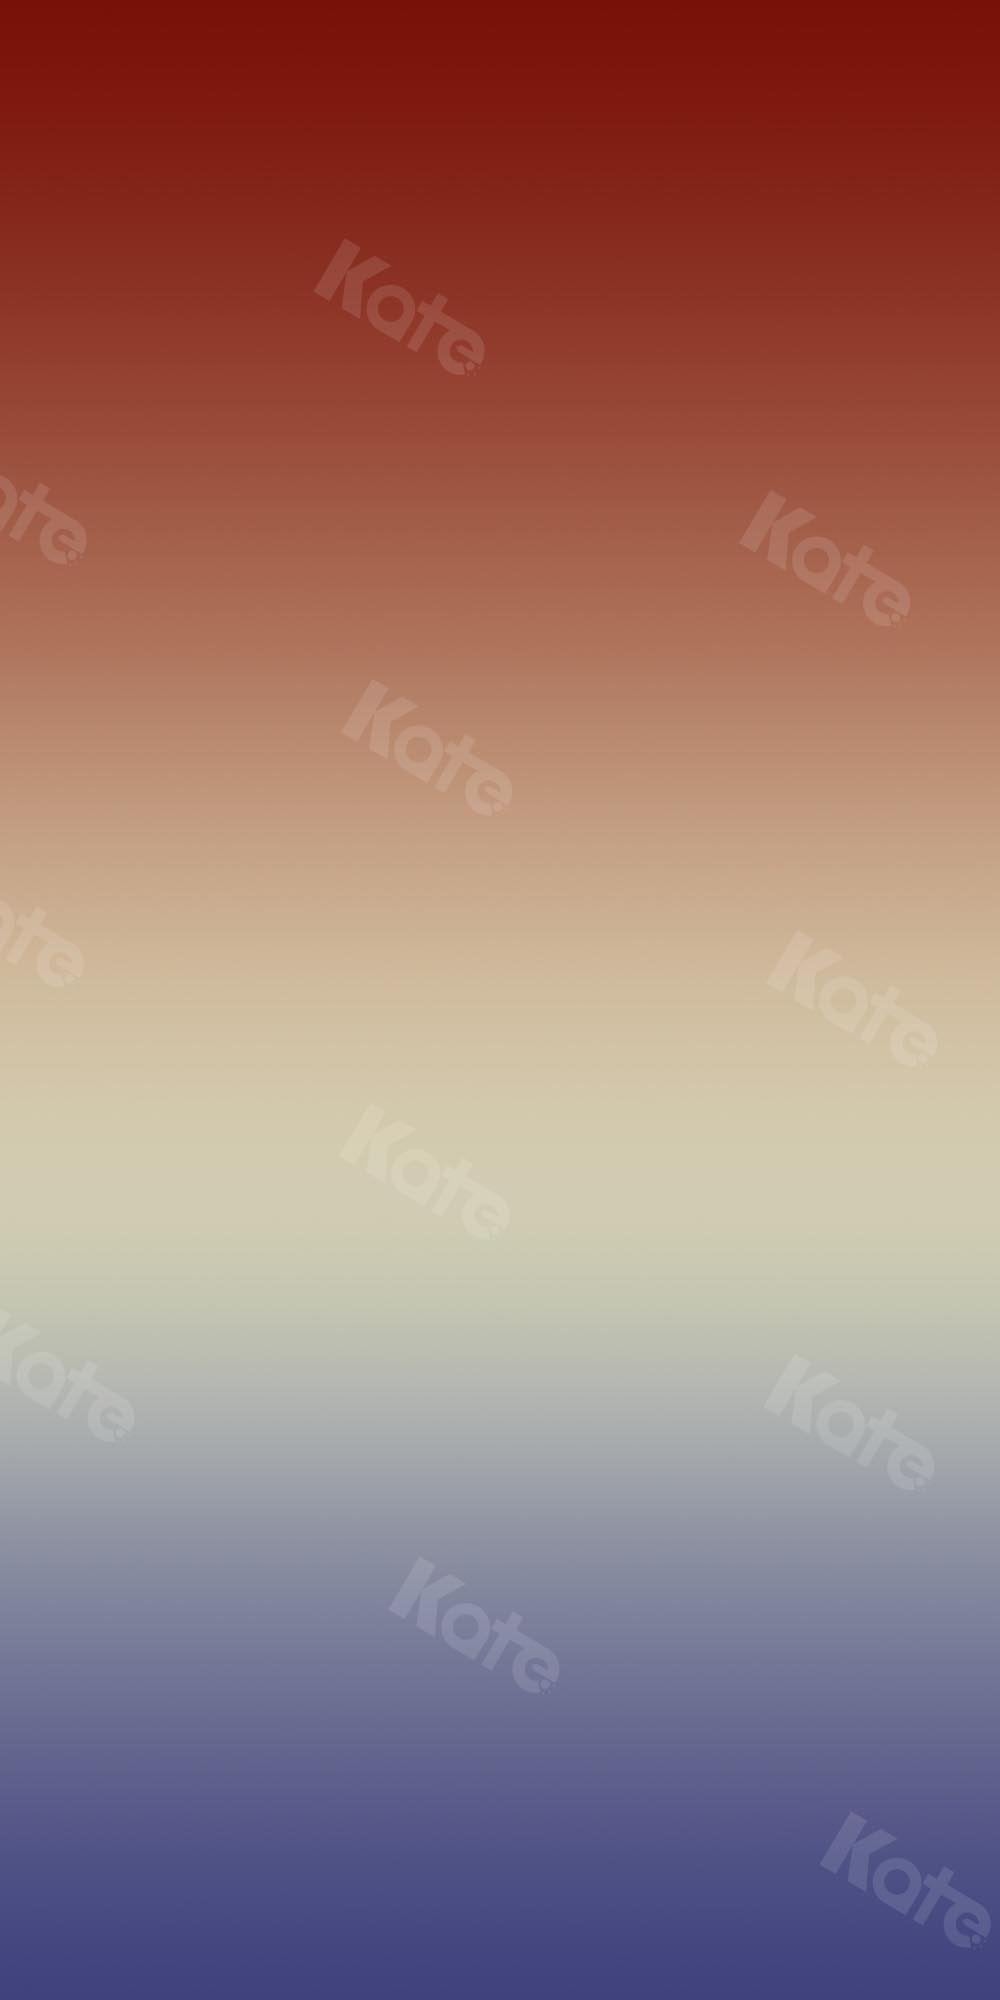 Kate Abstrakter Farbverlauf Rot bis Lila Hintergrund Ombre